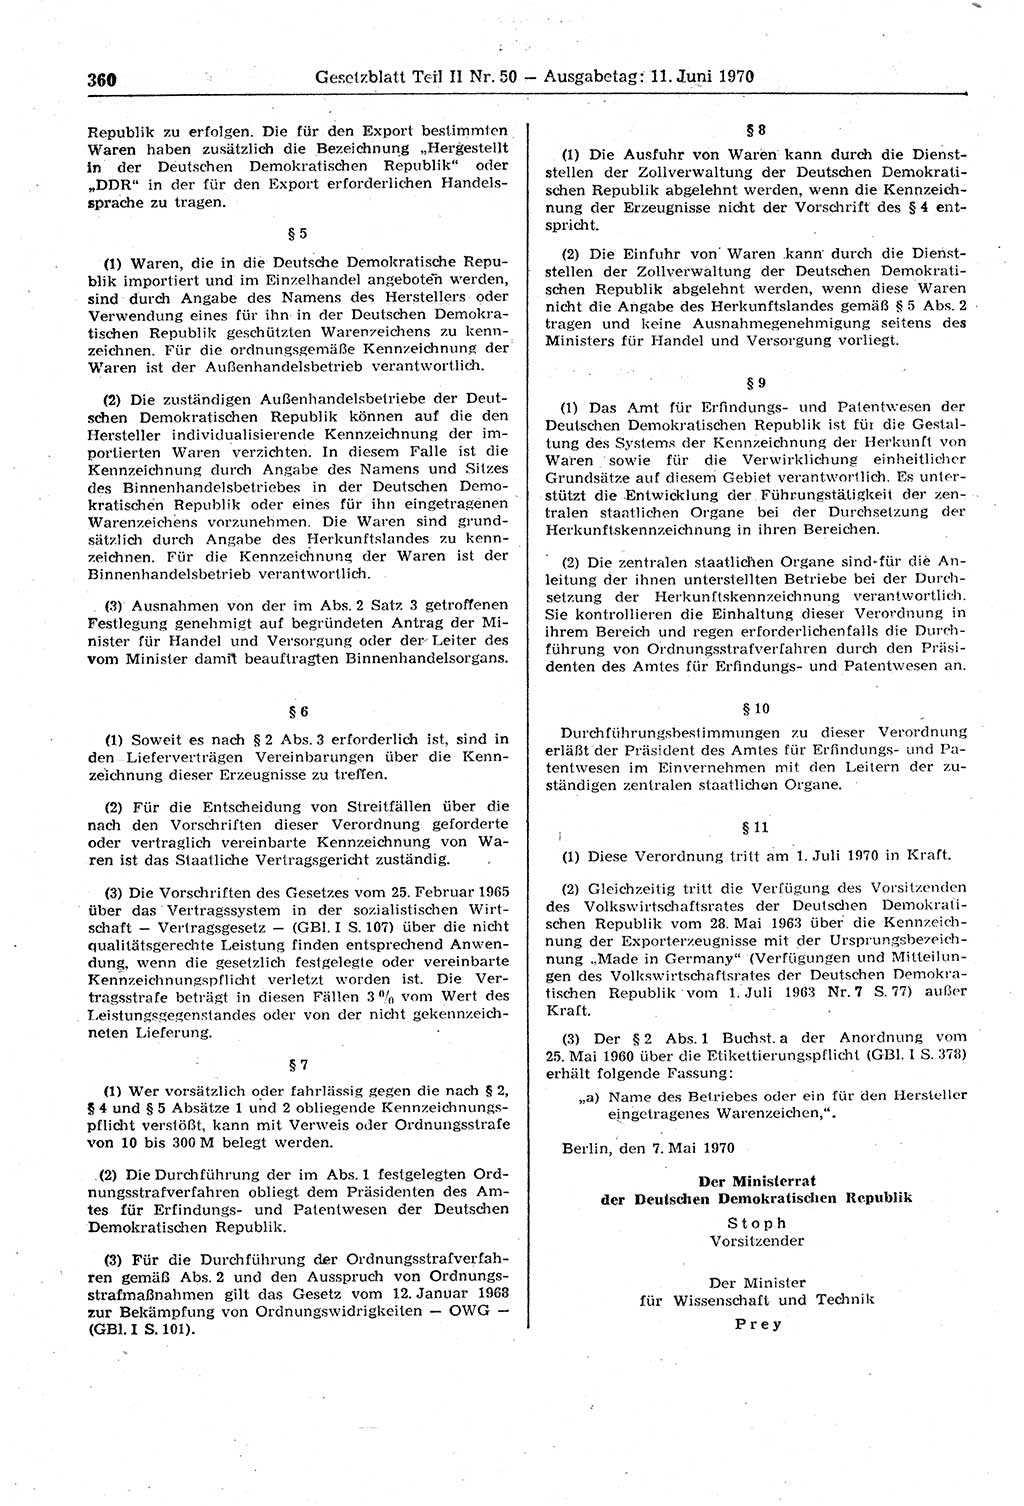 Gesetzblatt (GBl.) der Deutschen Demokratischen Republik (DDR) Teil ⅠⅠ 1970, Seite 360 (GBl. DDR ⅠⅠ 1970, S. 360)